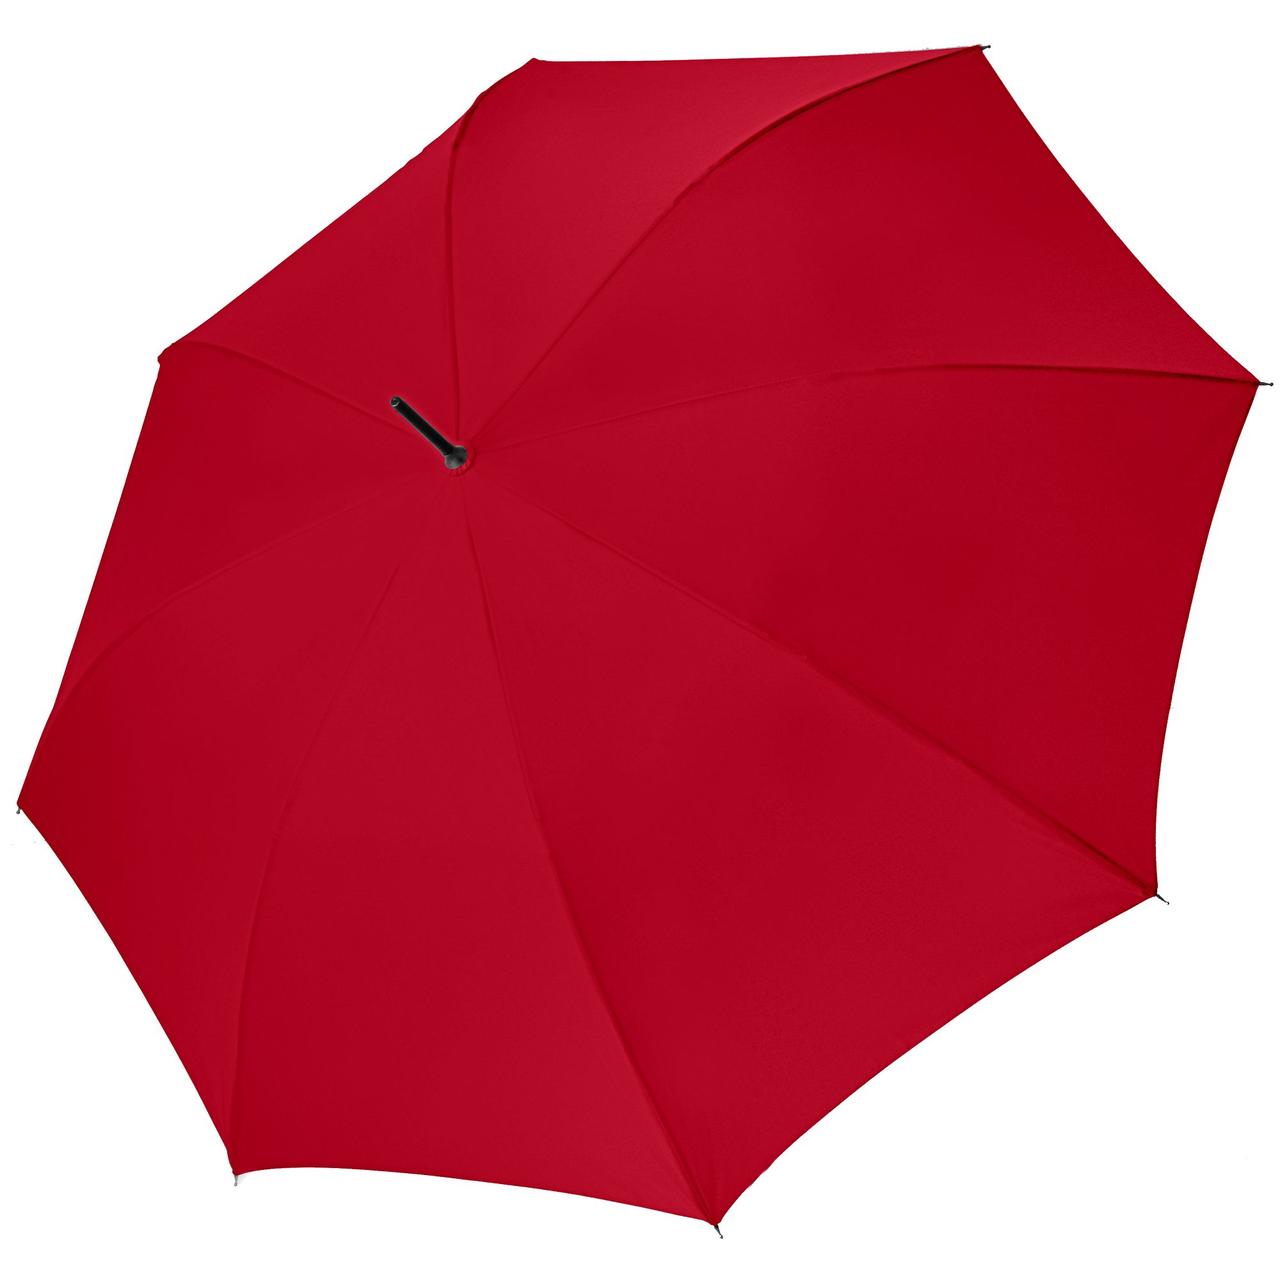 Зонт-трость Bristol AC, бордовый (артикул 11844.55)